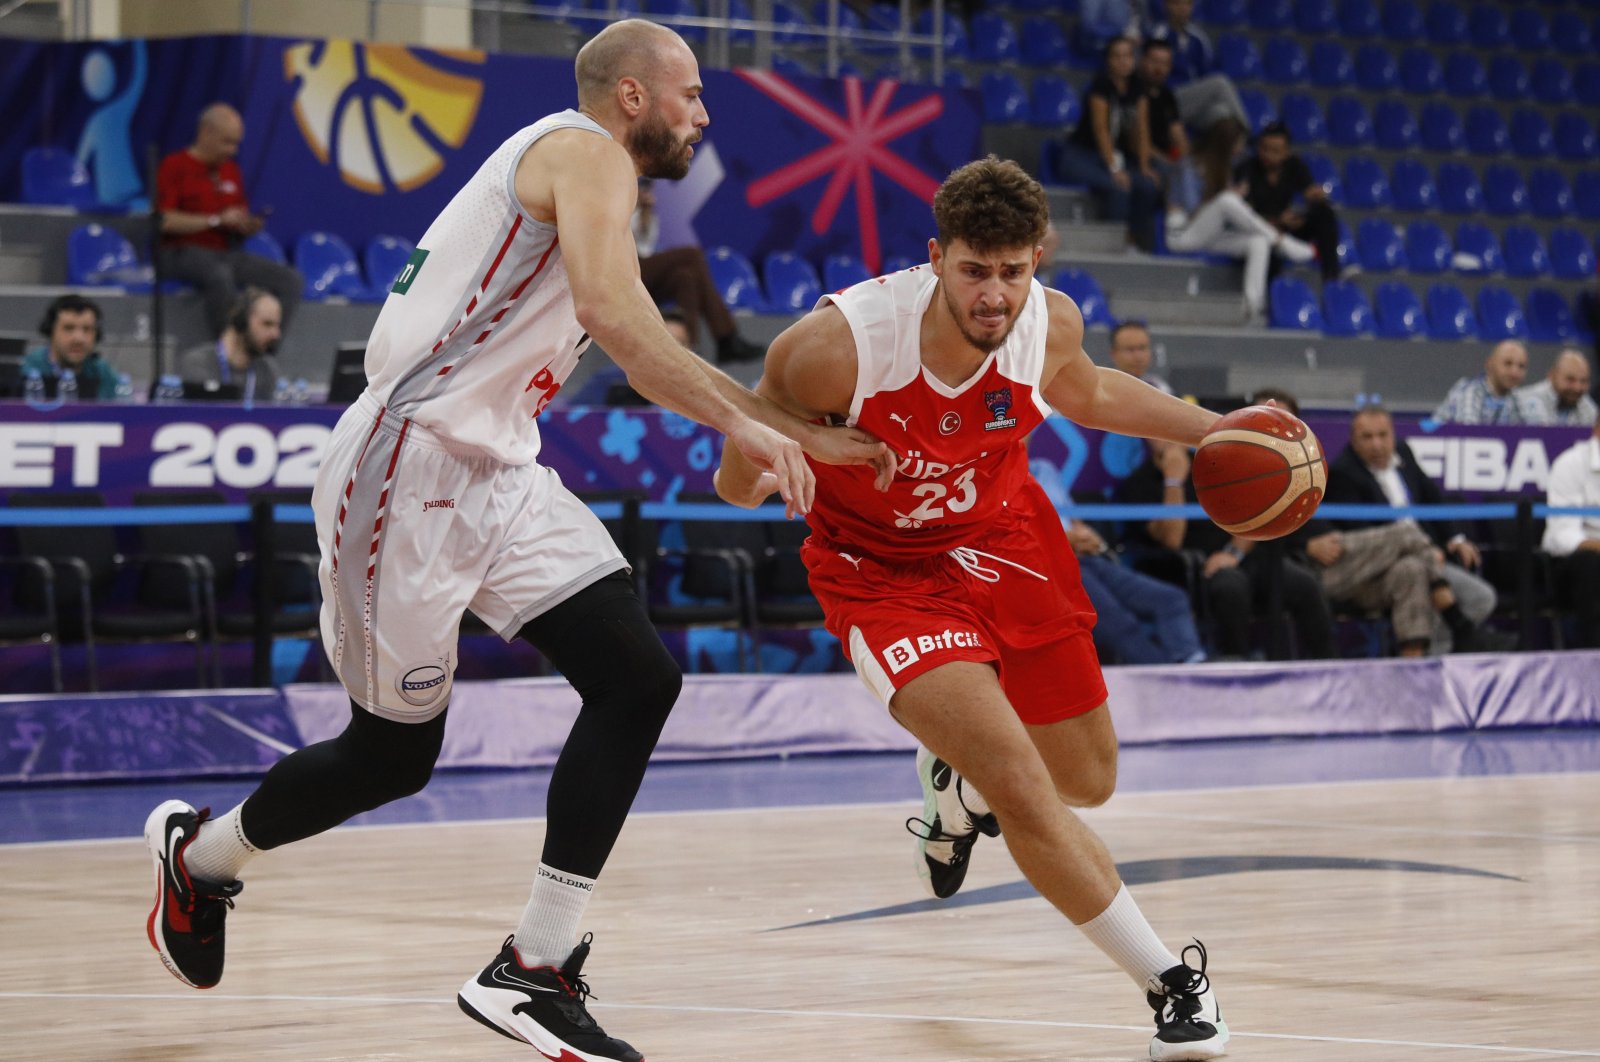 Türkiye bangkit kembali di EuroBasket dengan kemenangan atas Belgia